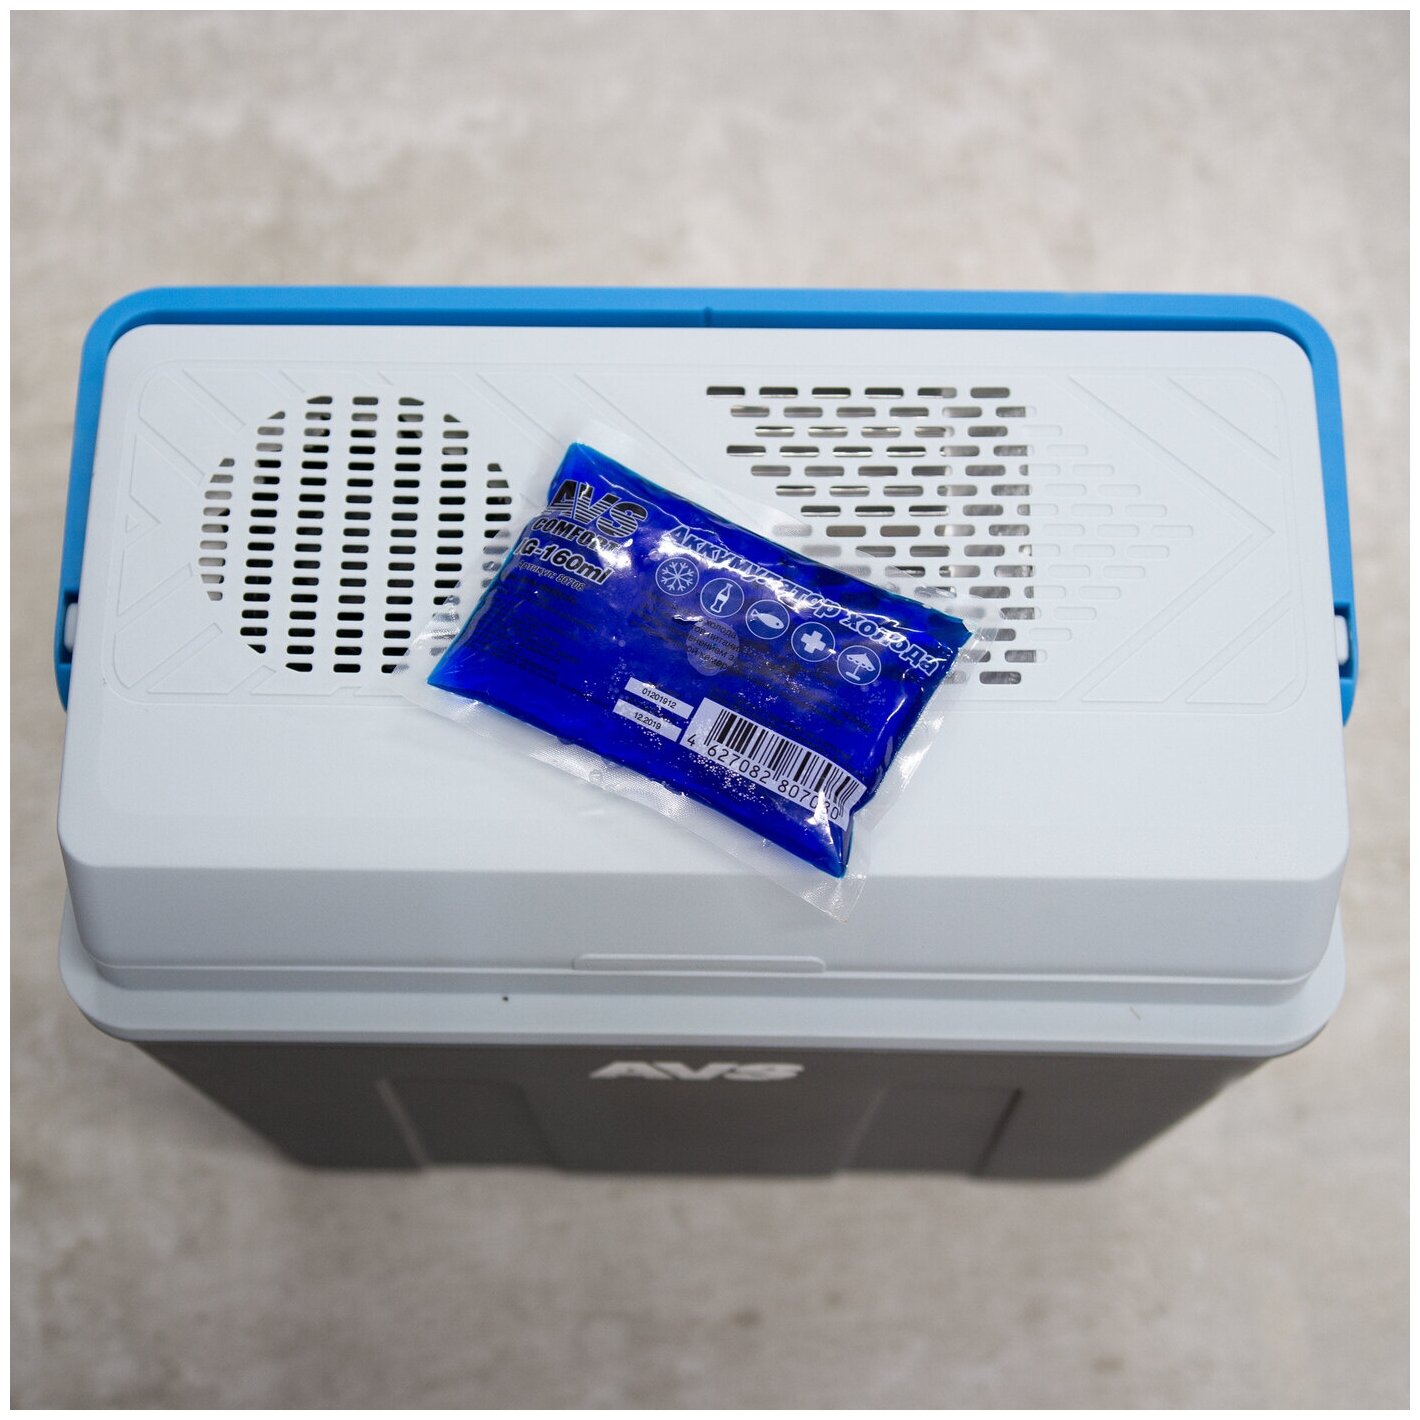 Аккумулятор холода для термосумки гелевый AVS 5х11х1,5 см объем 160 мл охлаждающий элемент медицинский мягкий IG-160ml комплект из 2 шт - 80708(2)